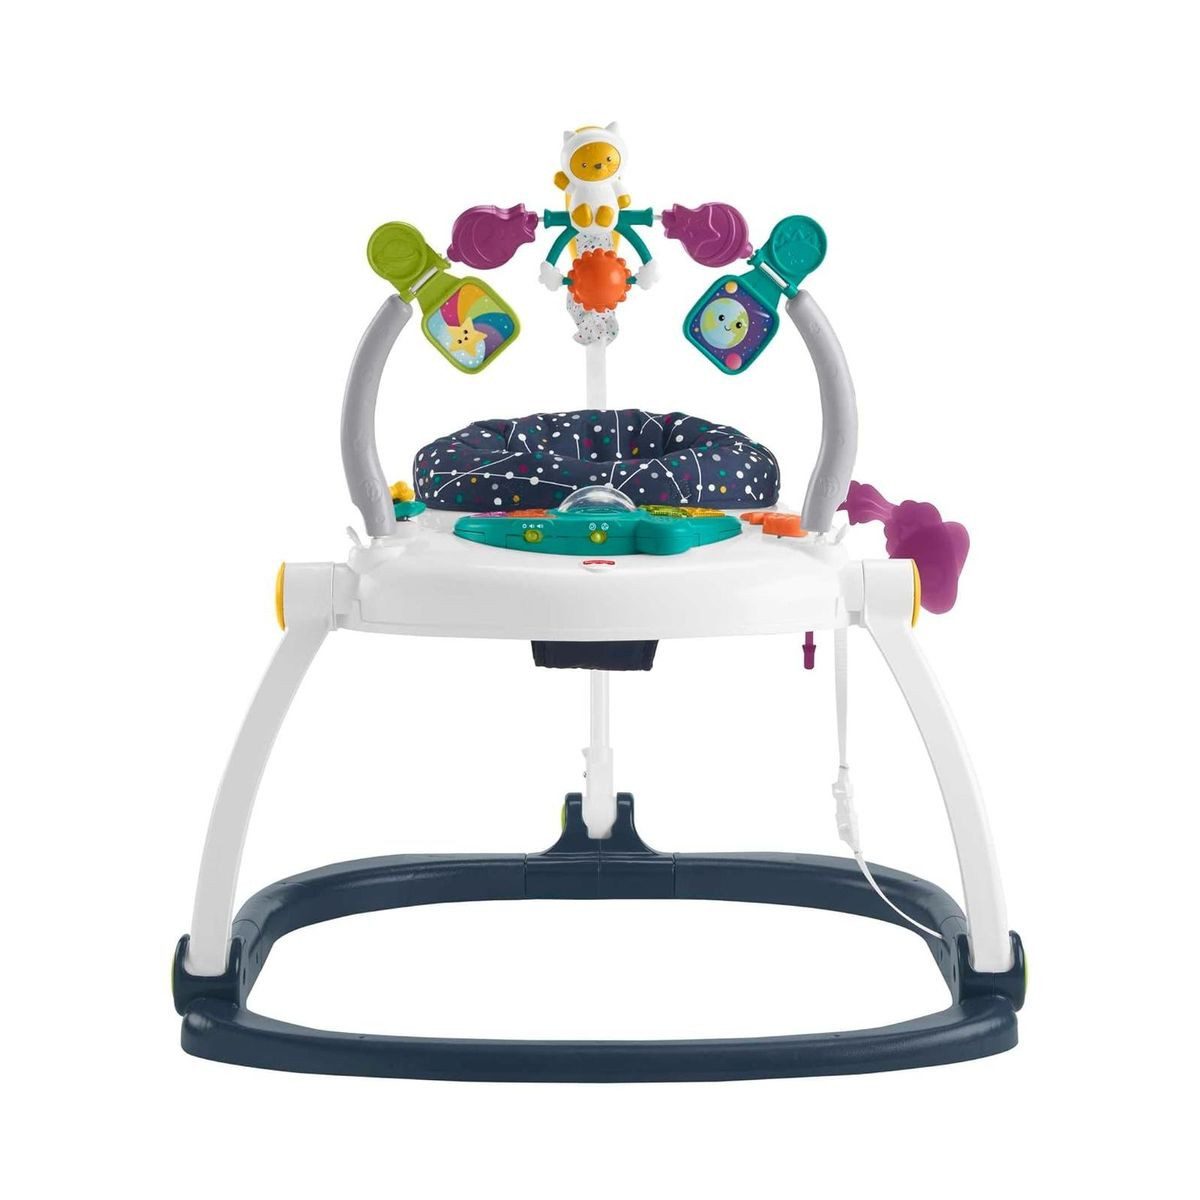 Mattel® Wippgestell Mattel HPH46 - Fisher Price - Kätzchen Astronaut Jumperoo